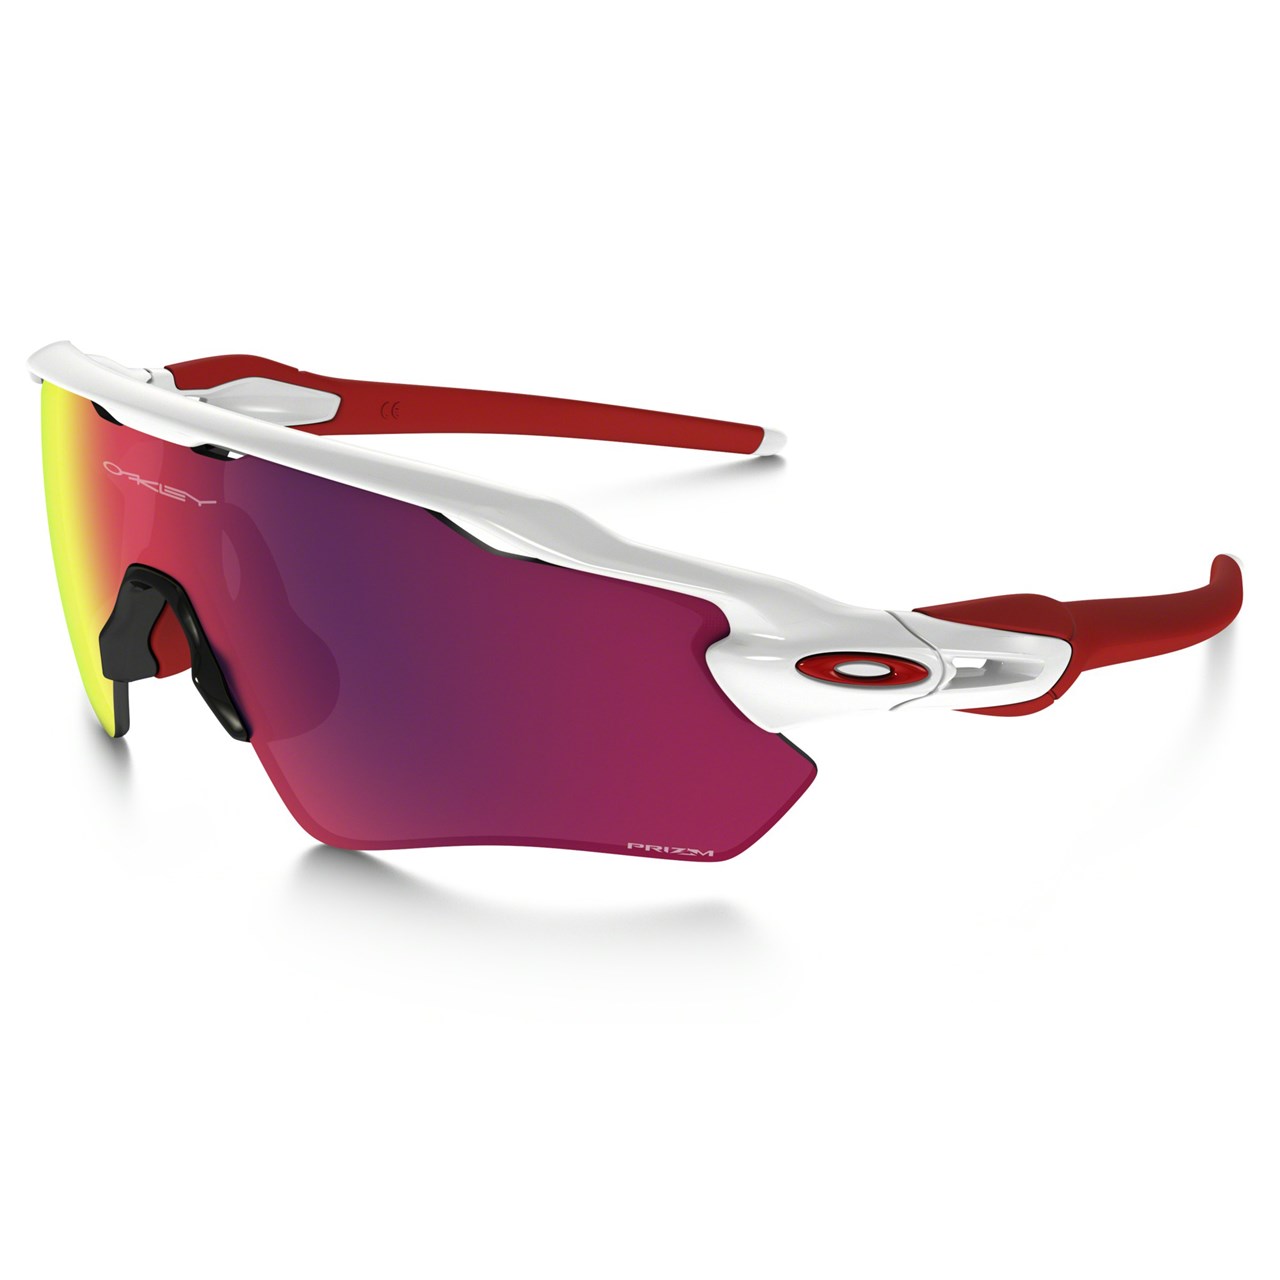 Slika za Radar EV Prizm Sports Sonnenbrille